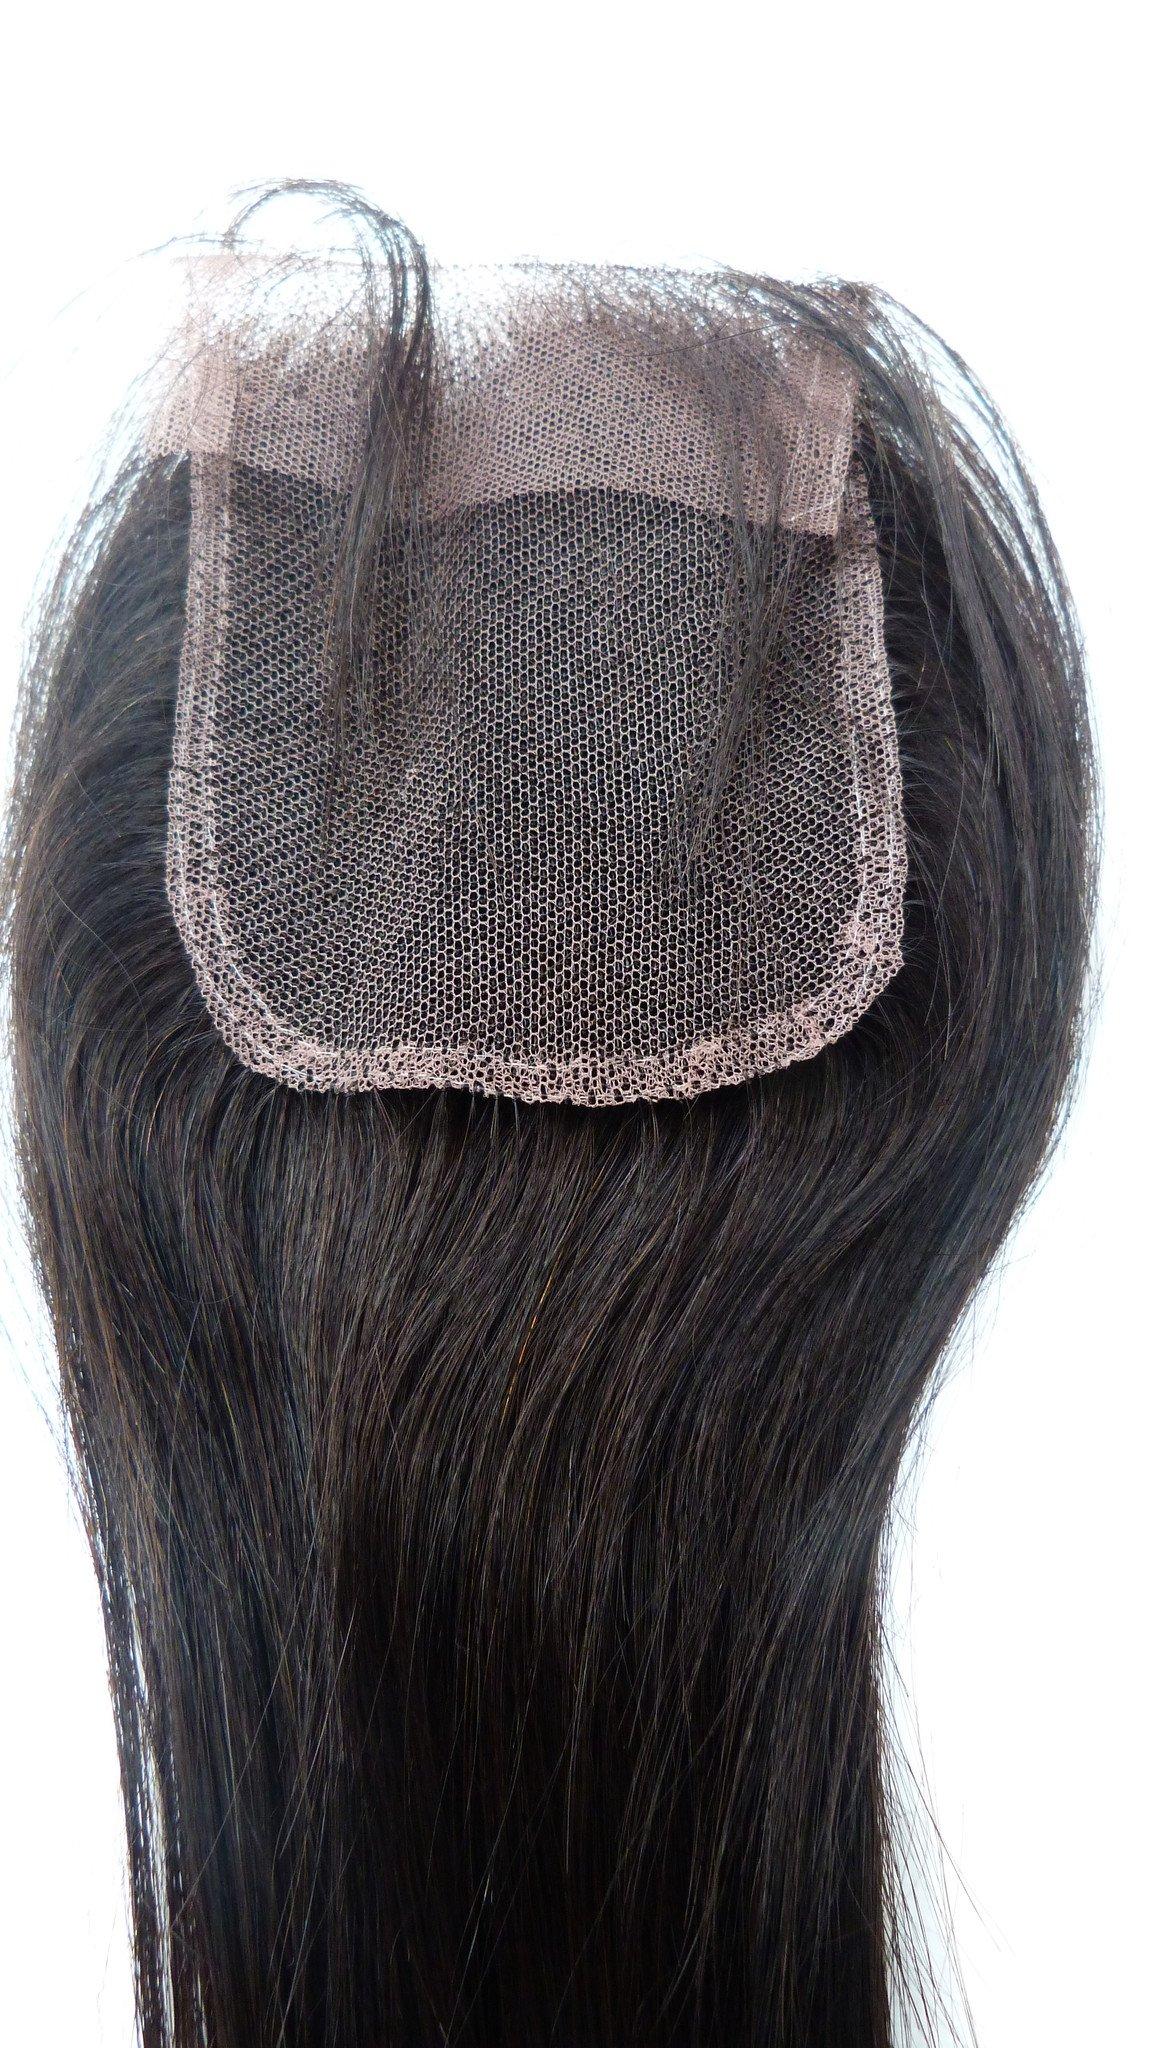 إغلاق الجزء العلوي من الدانتيل الهندي ريمي العذراء - 3.5 × 4 بوصة - شعر وجمال عذراء، أفضل وصلات الشعر، شعر بشري بكر حقيقي.